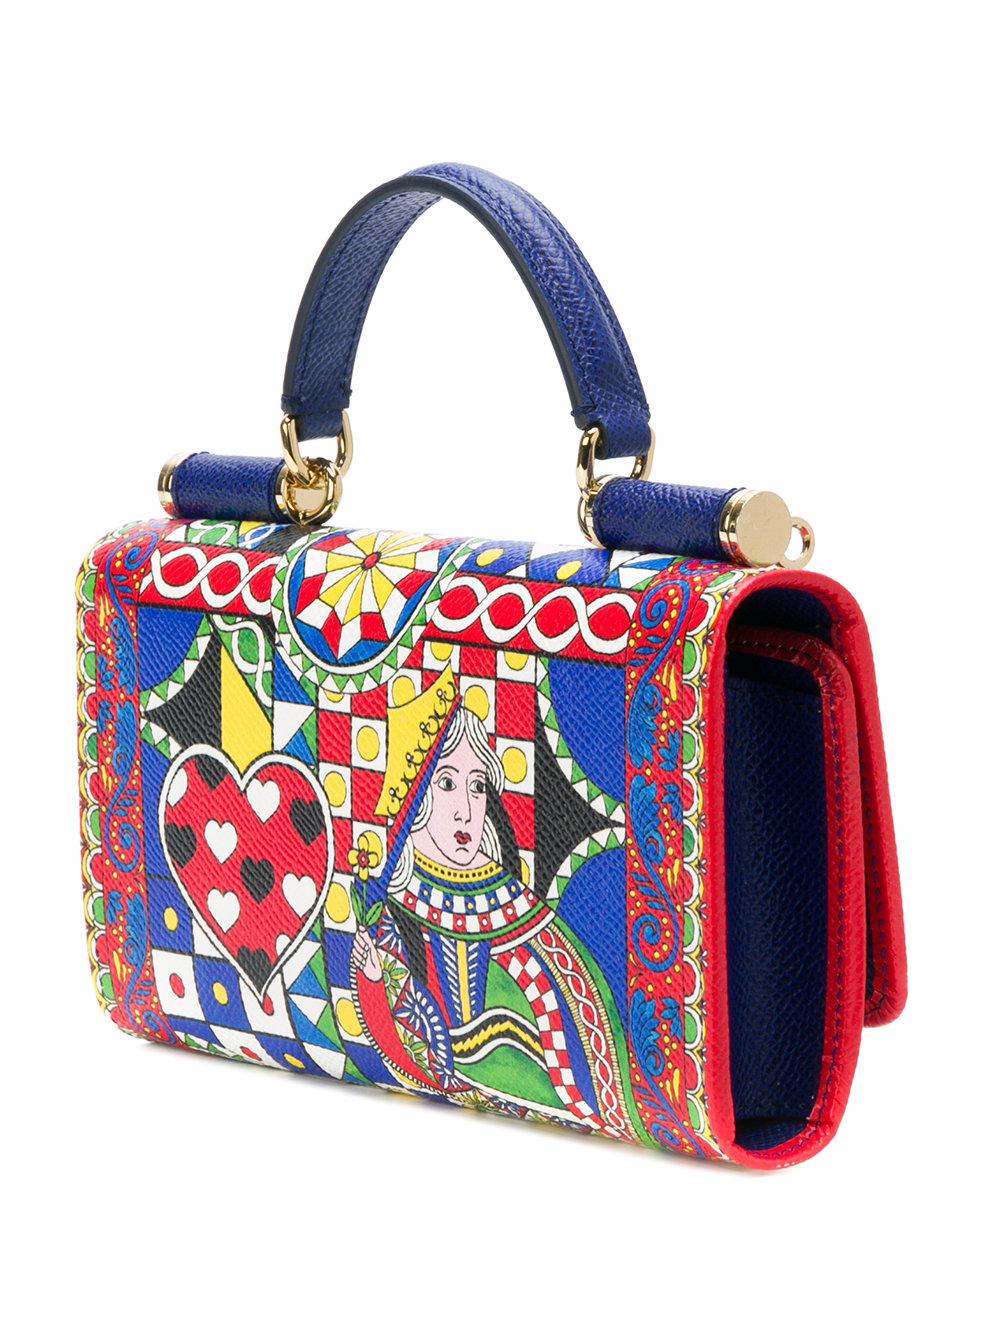 dolce and gabbana handbag